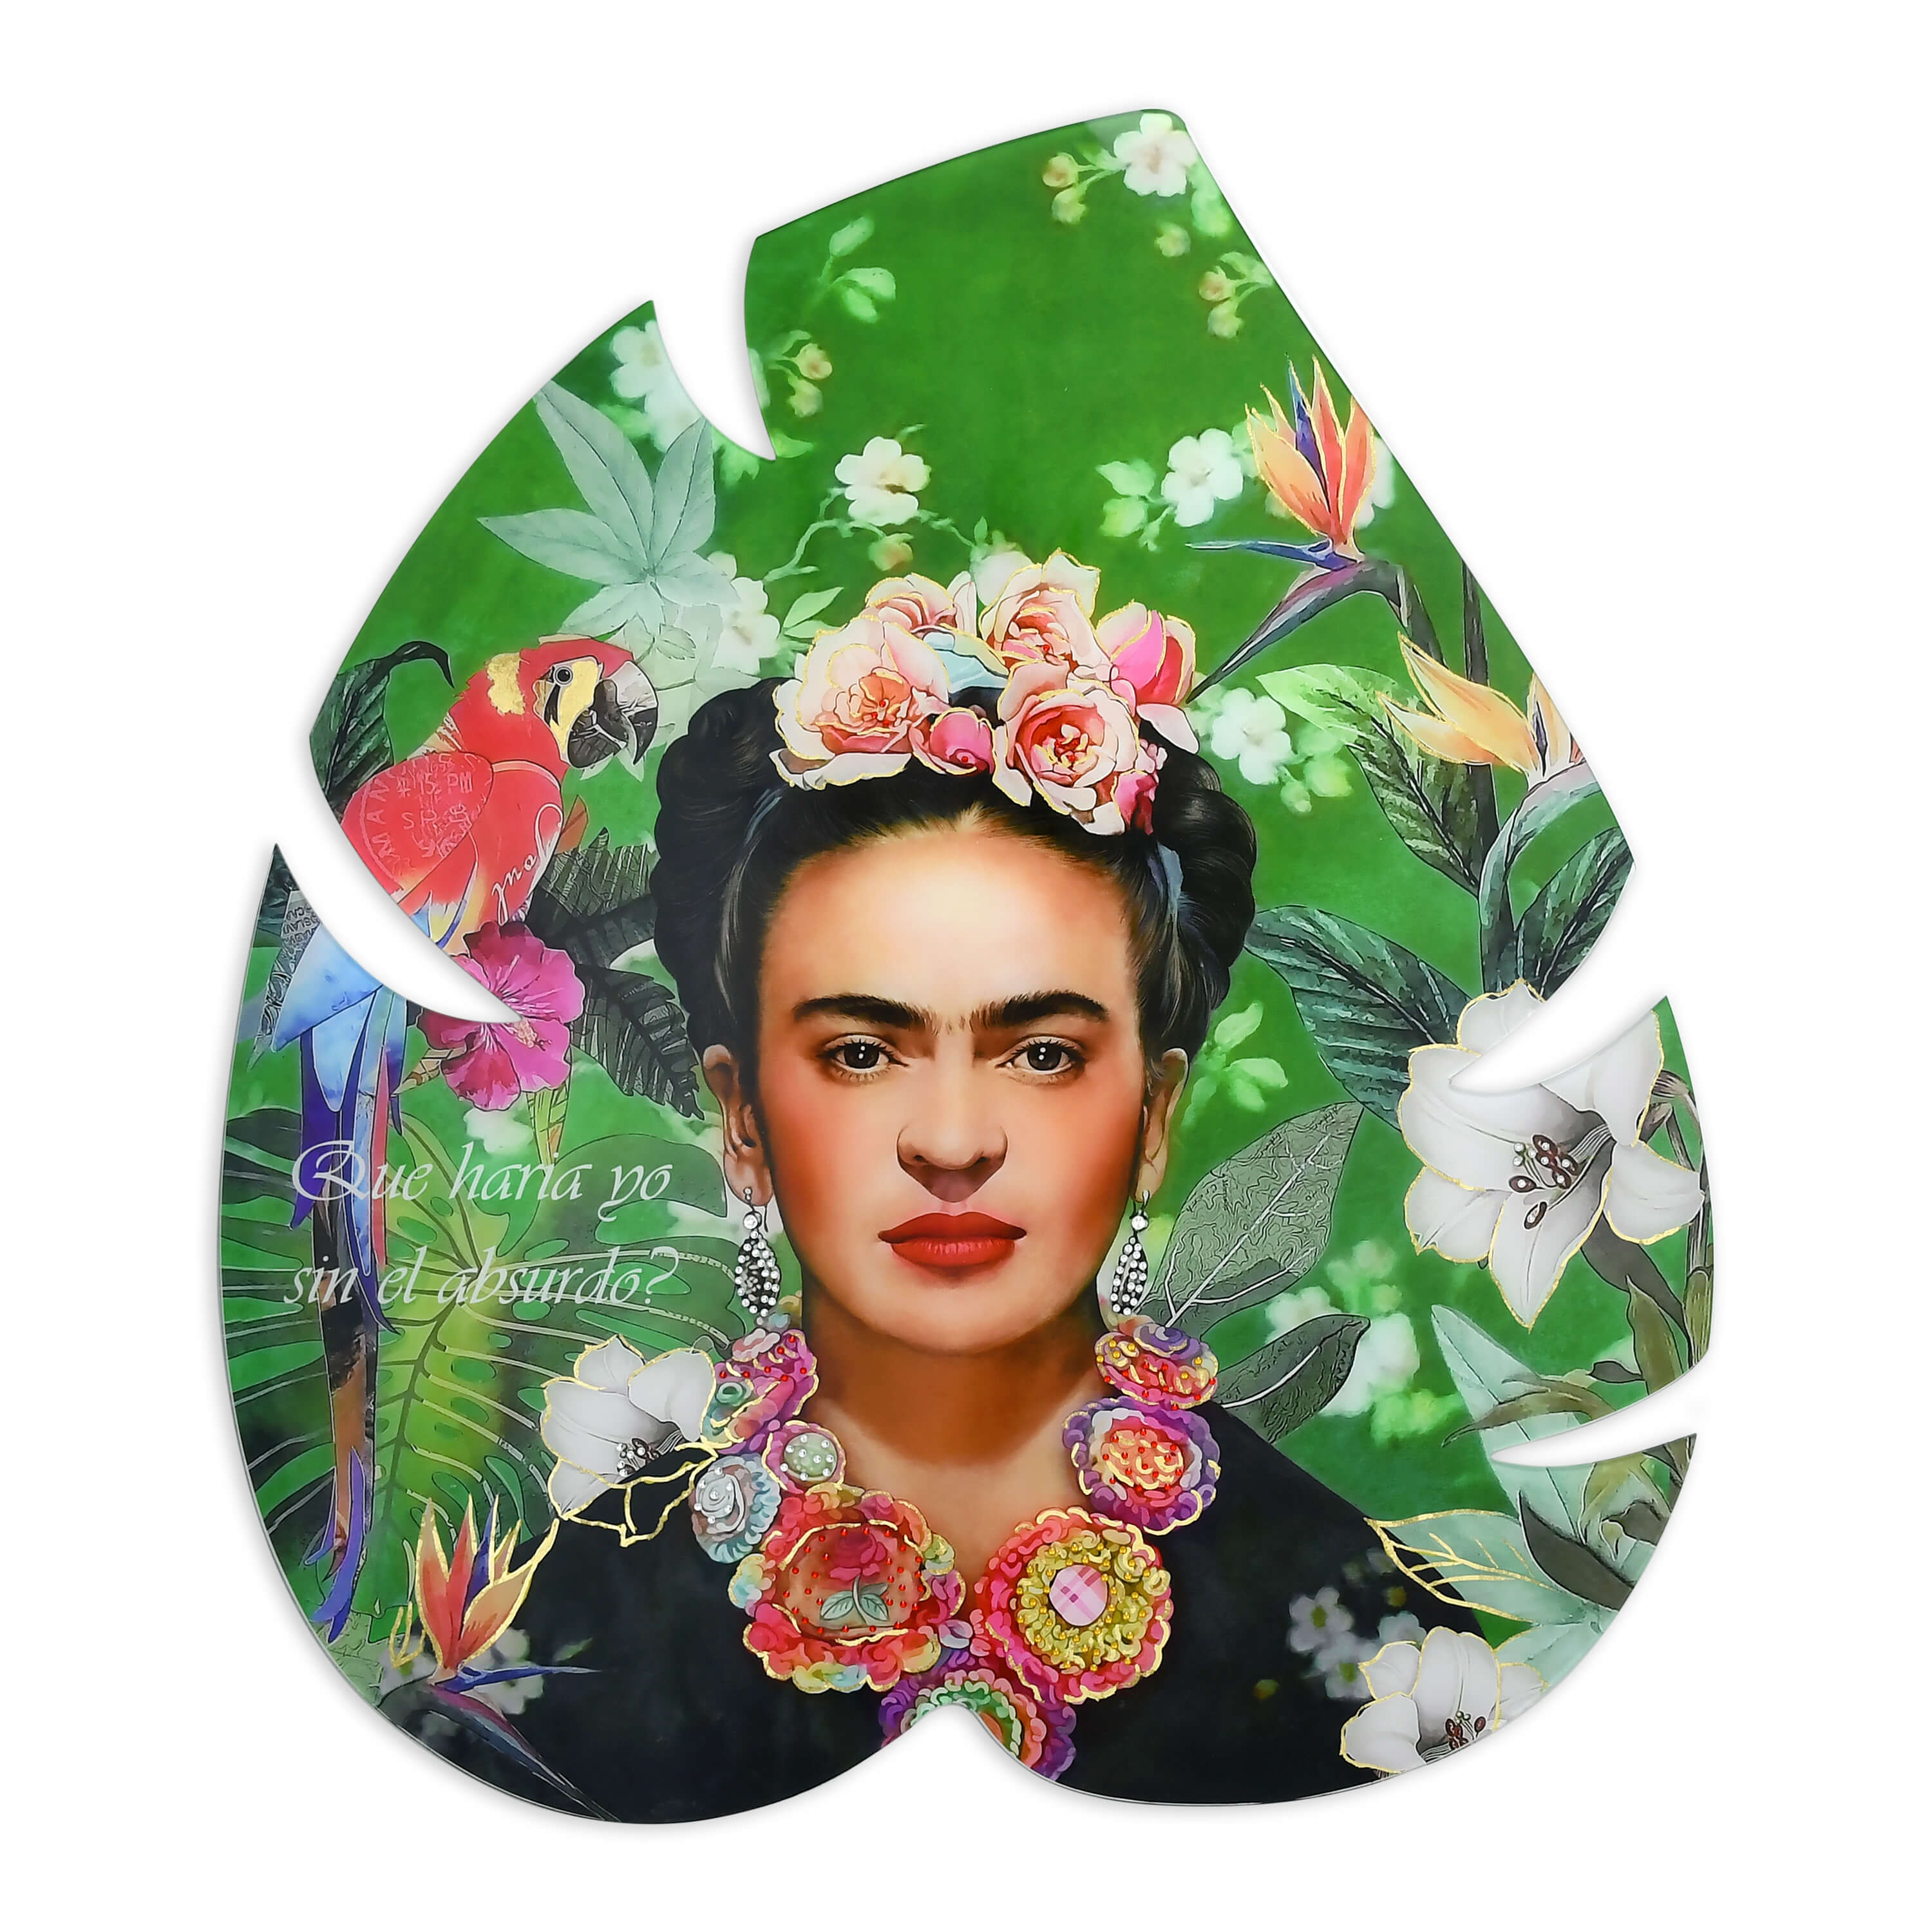 Bellamì - Stampa su plexiglass -Omaggio a Frida Khalo-